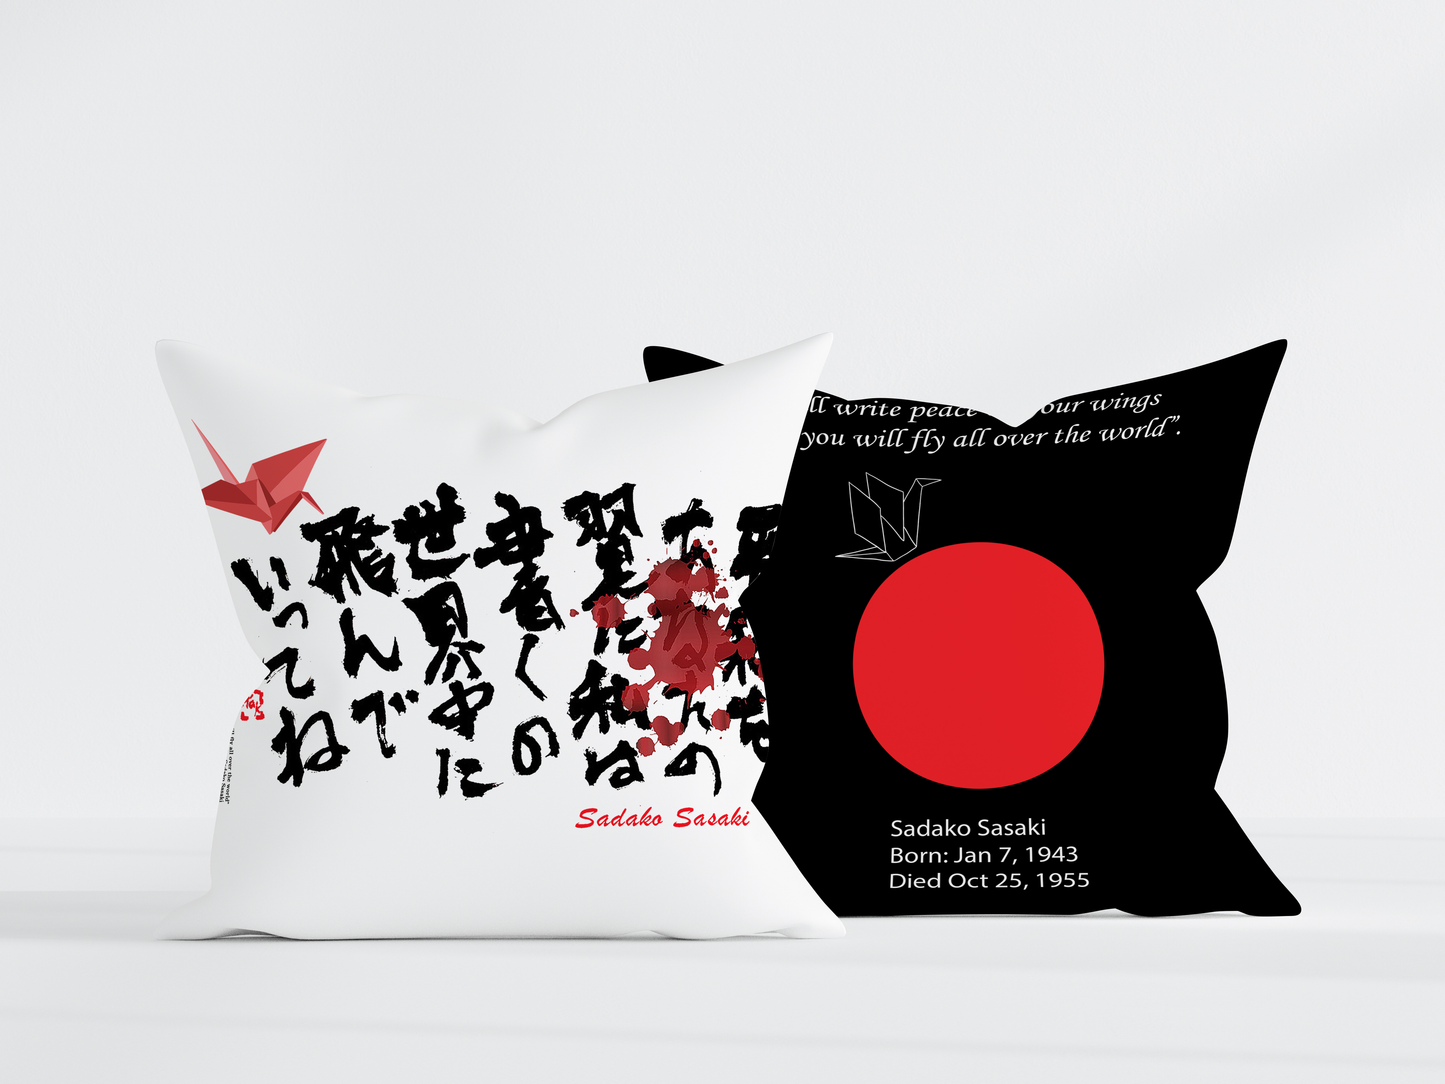 Sadako Sasaki Throw Pillow 22x22 - Black Back